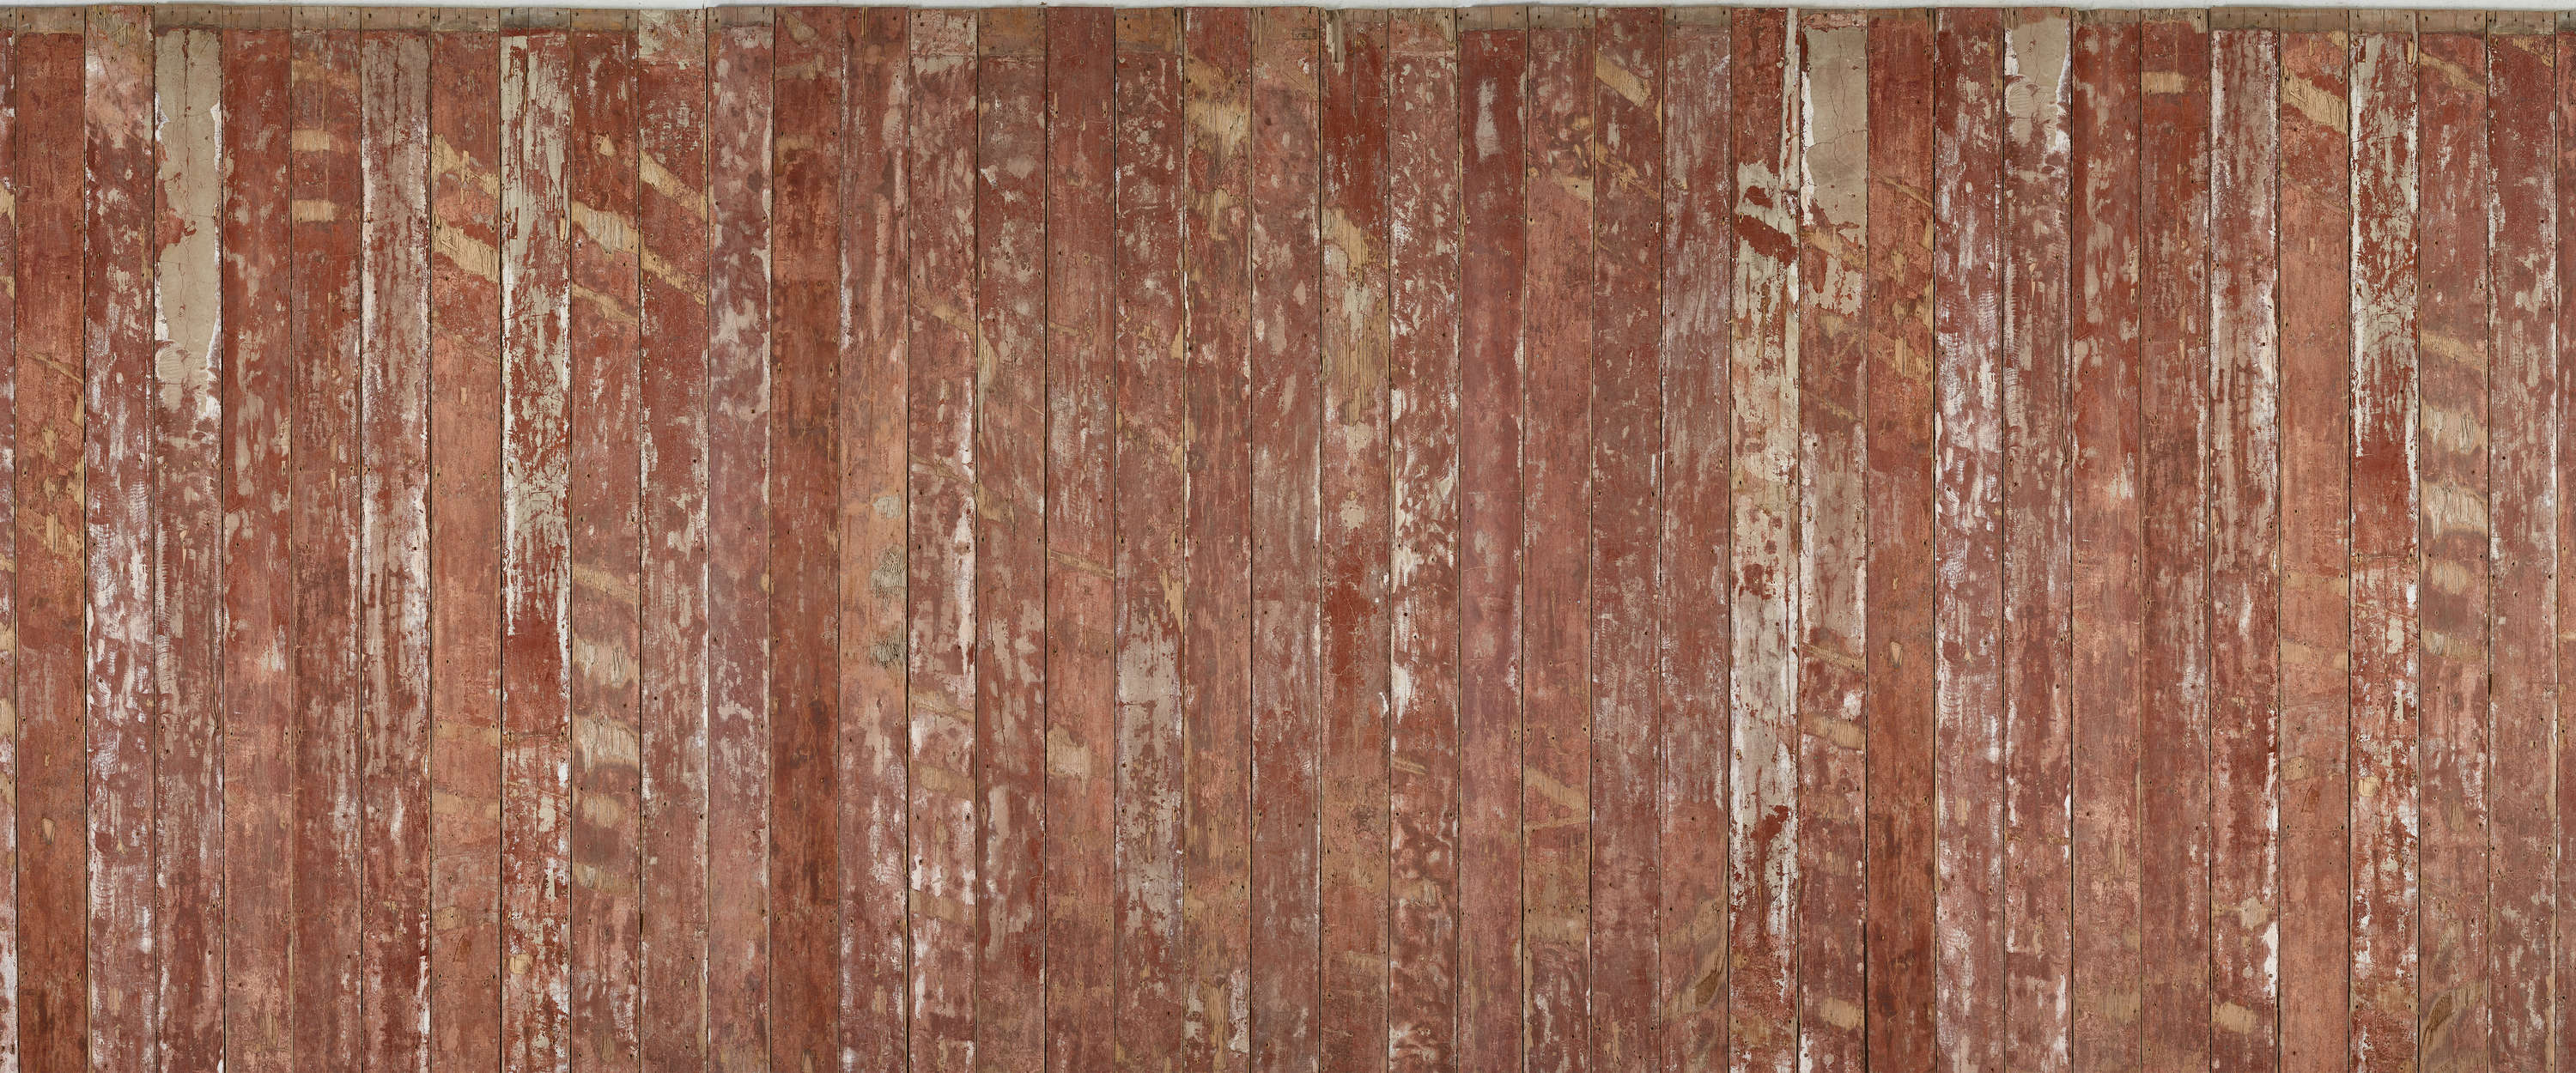             Tablas de madera de color marrón rojizo en papel pintado de aspecto usado
        